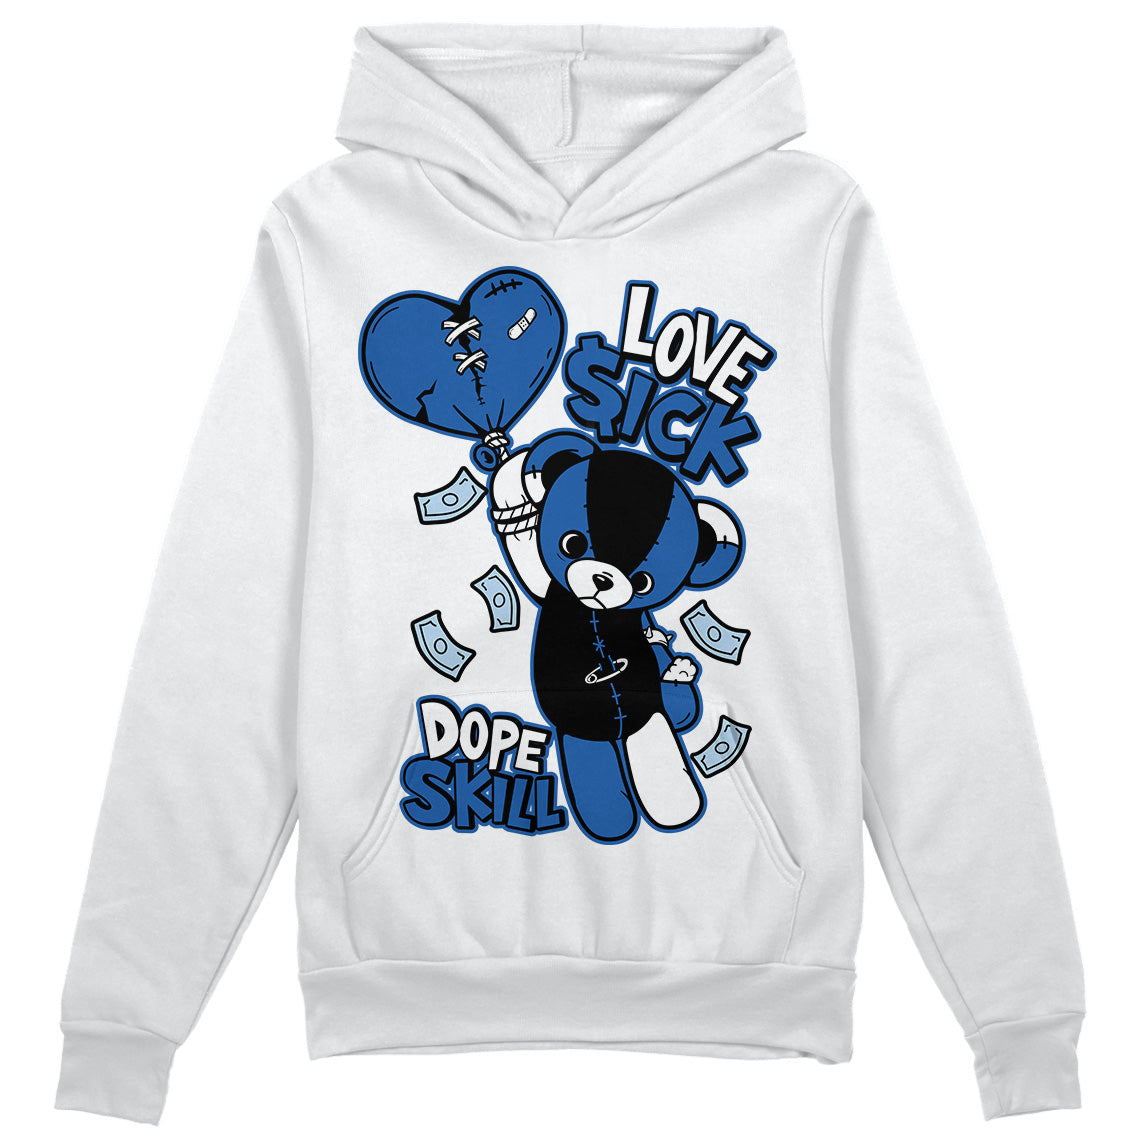 Jordan 11 Low “Space Jam” DopeSkill Hoodie Sweatshirt Love Sick Graphic Streetwear - White